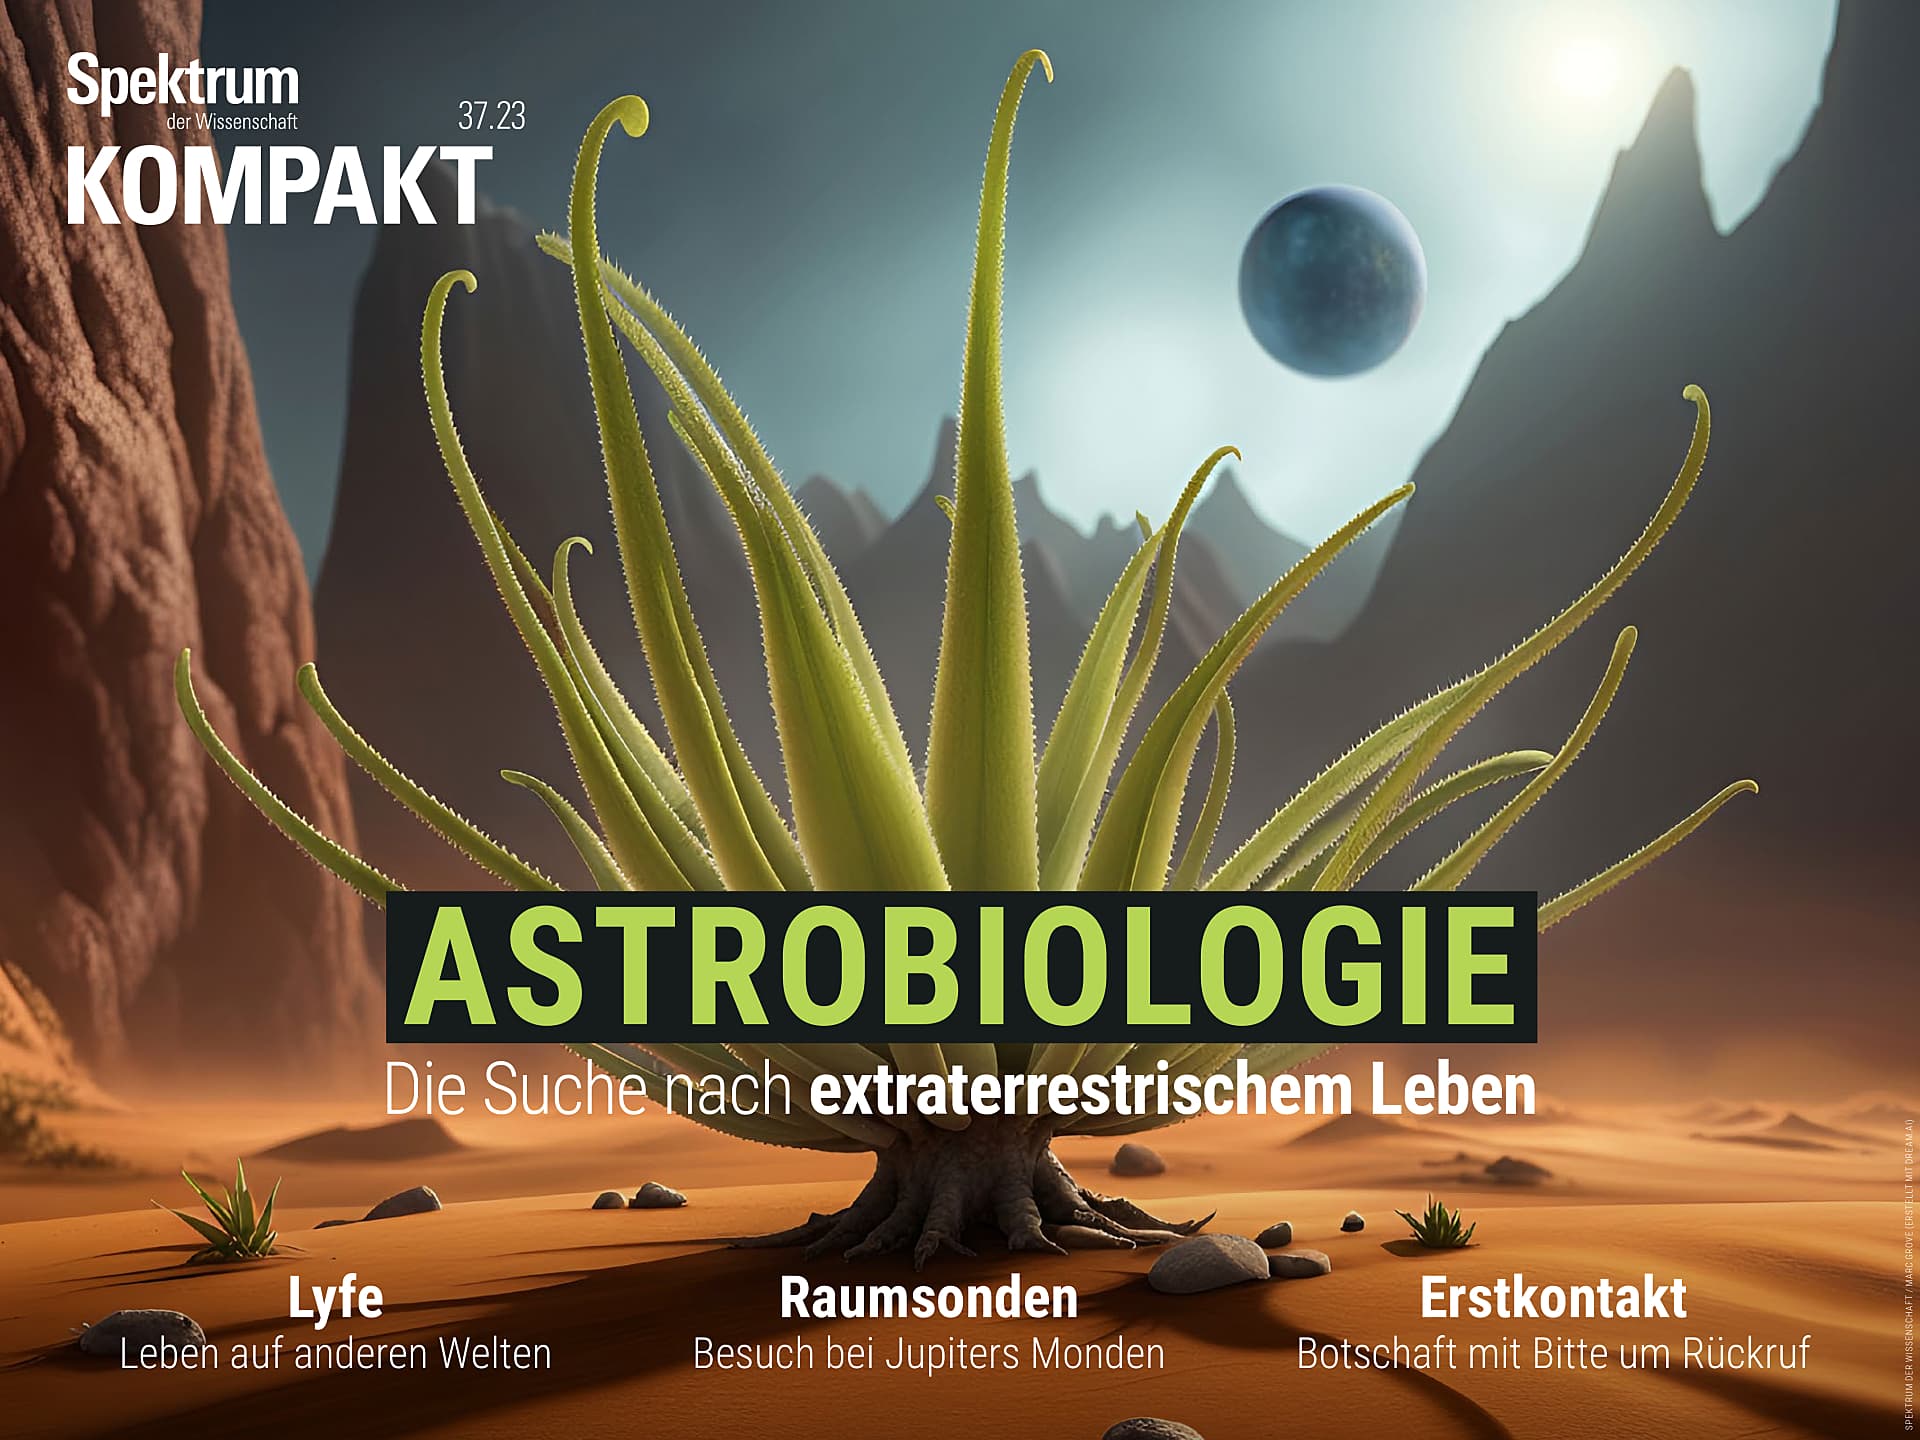 Astrobiologie - Die Suche nach extraterrestrischem Leben